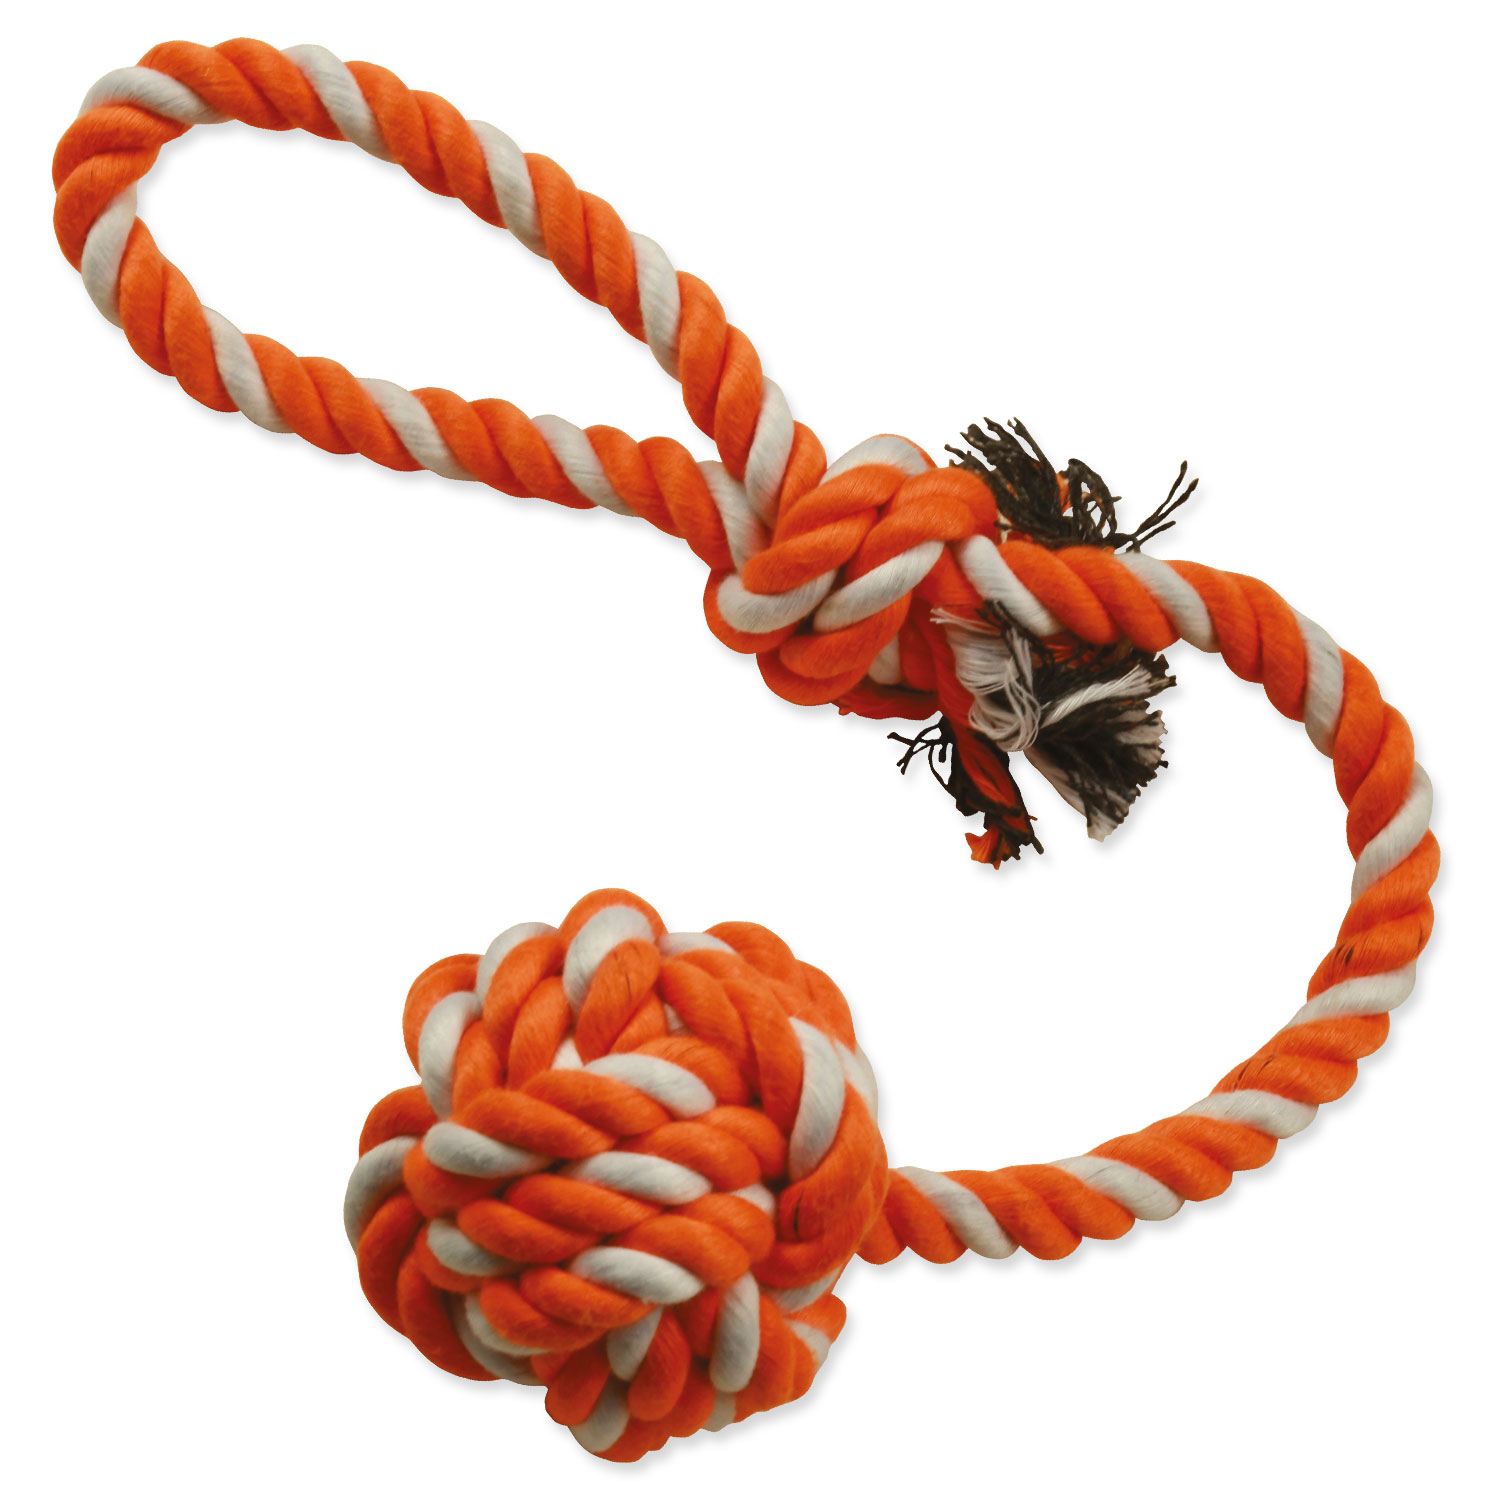 Přetahovadlo DOG FANTASY házecí oranžovo-bílé, 45 cm